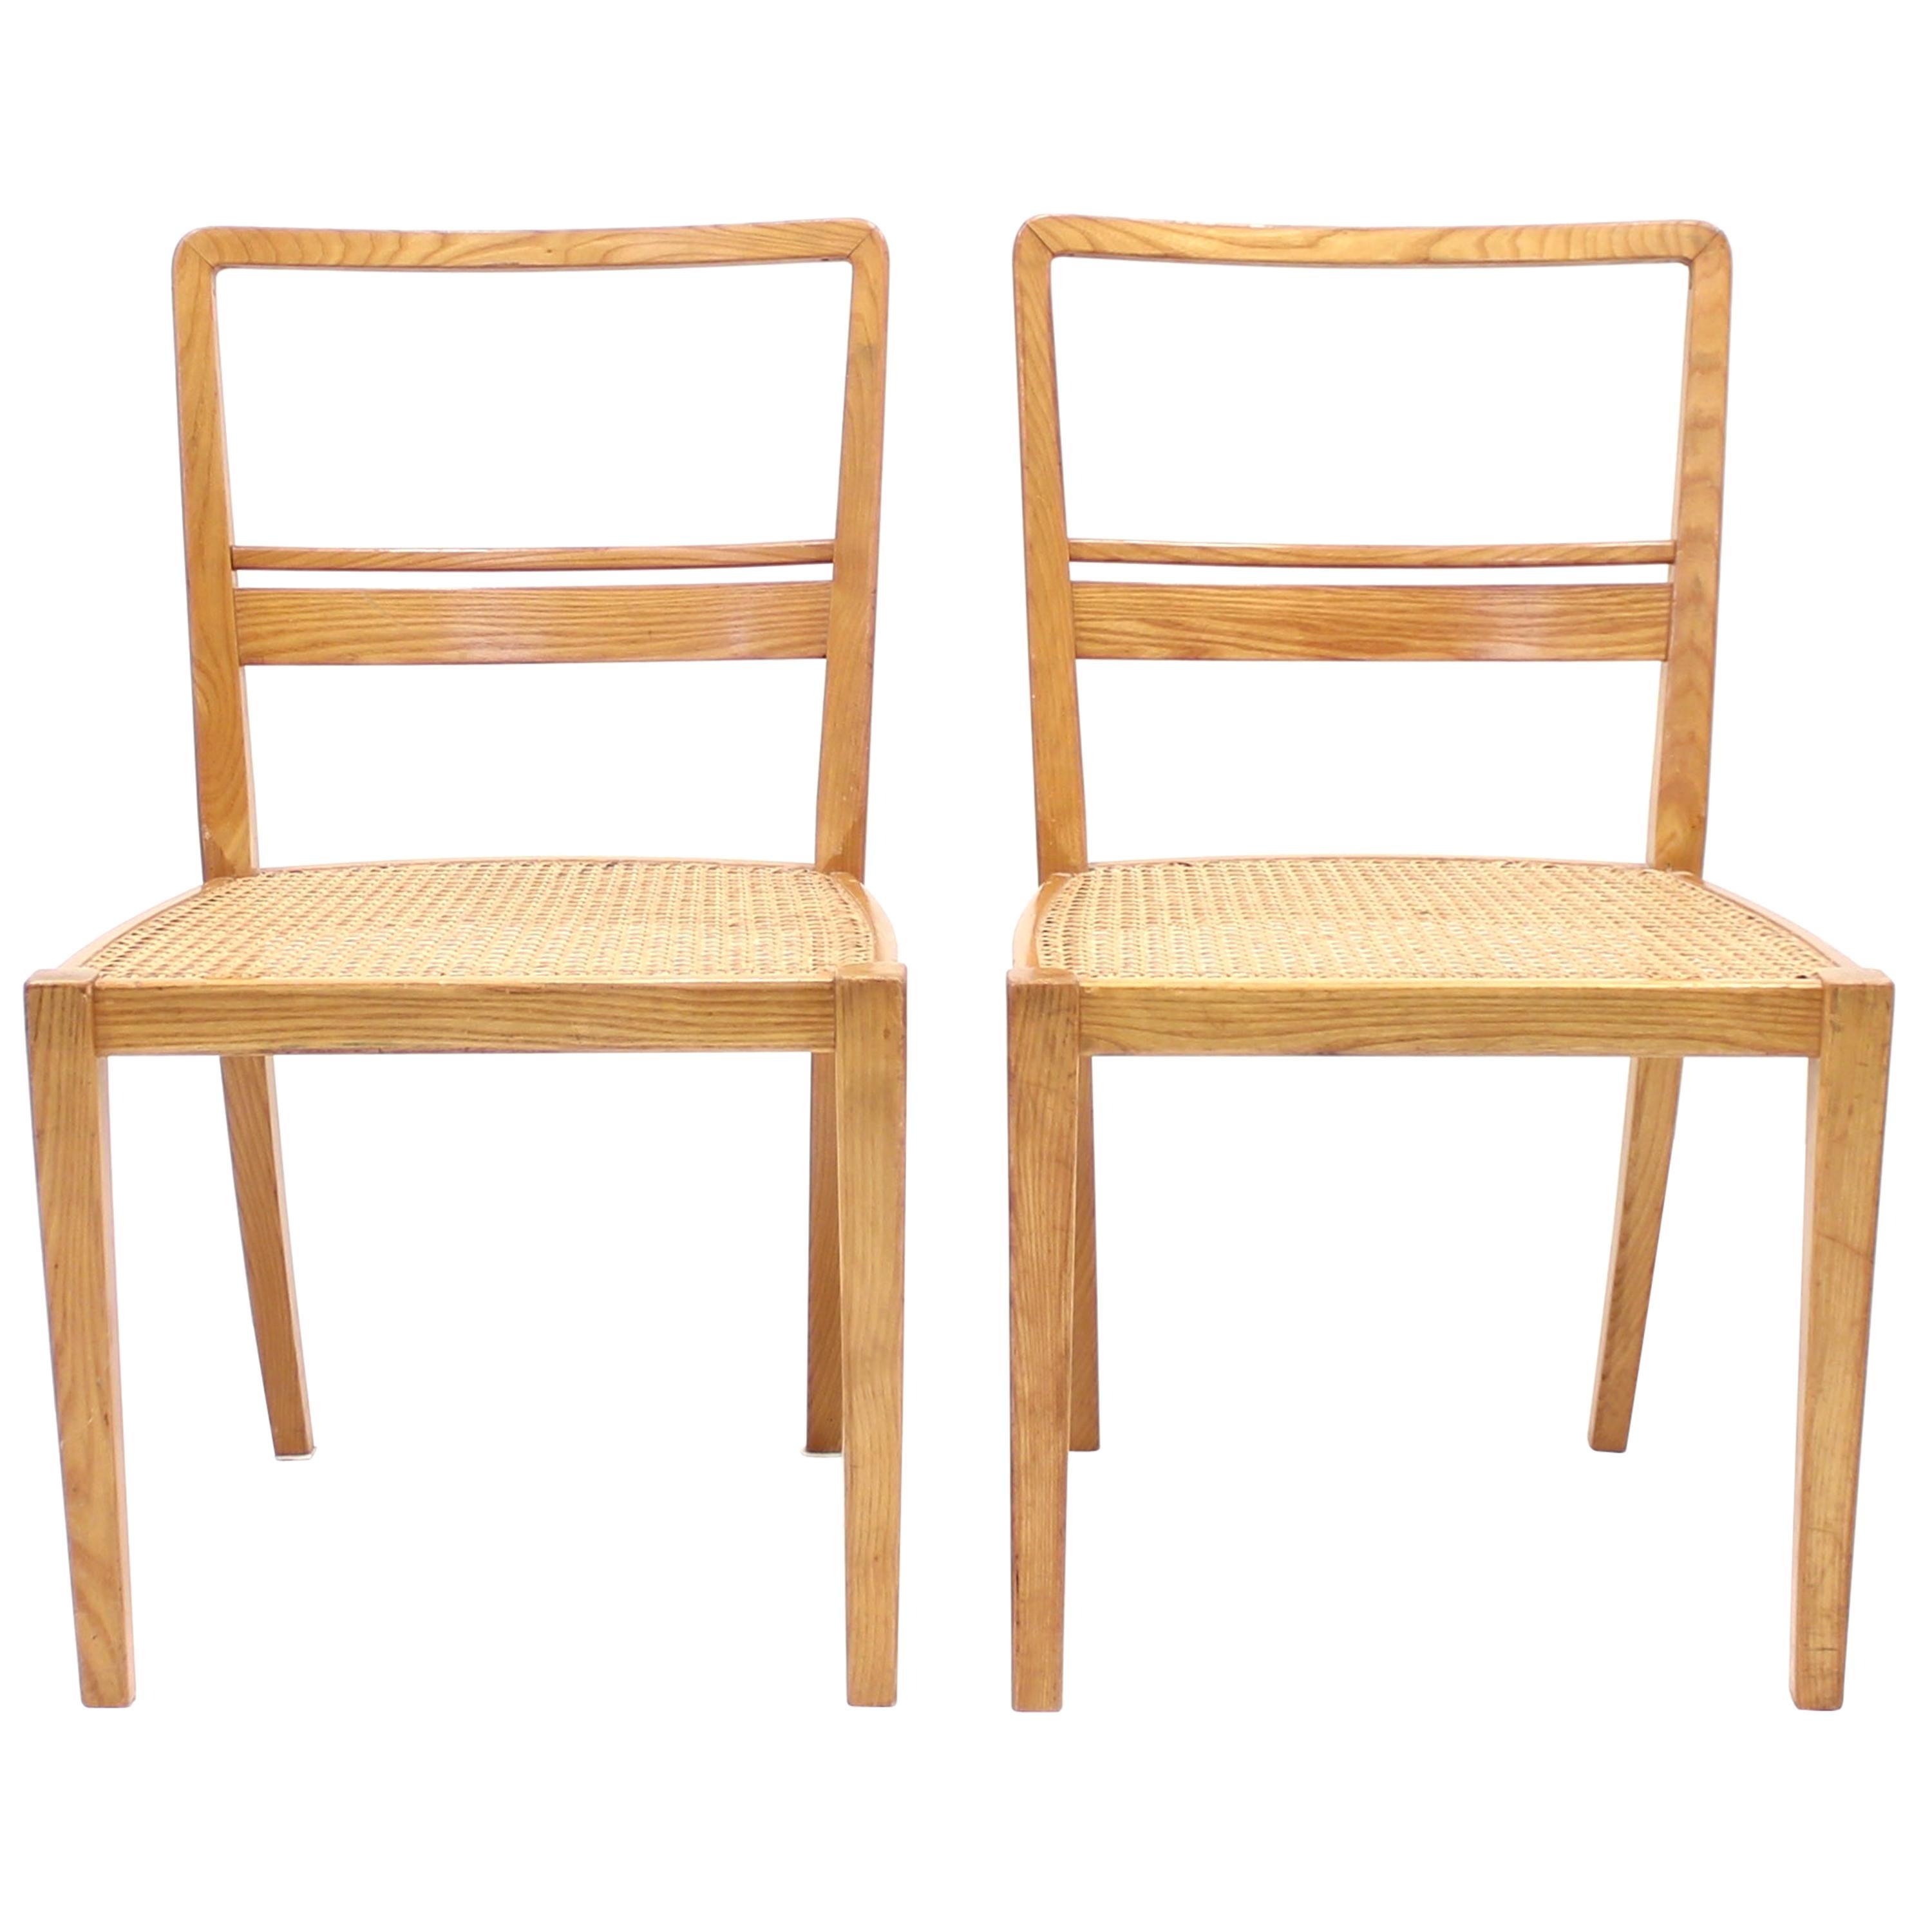 Erik Chambert, Very Rare Pair of Chairs, AB Chamberts Möbelfabrik, 1937